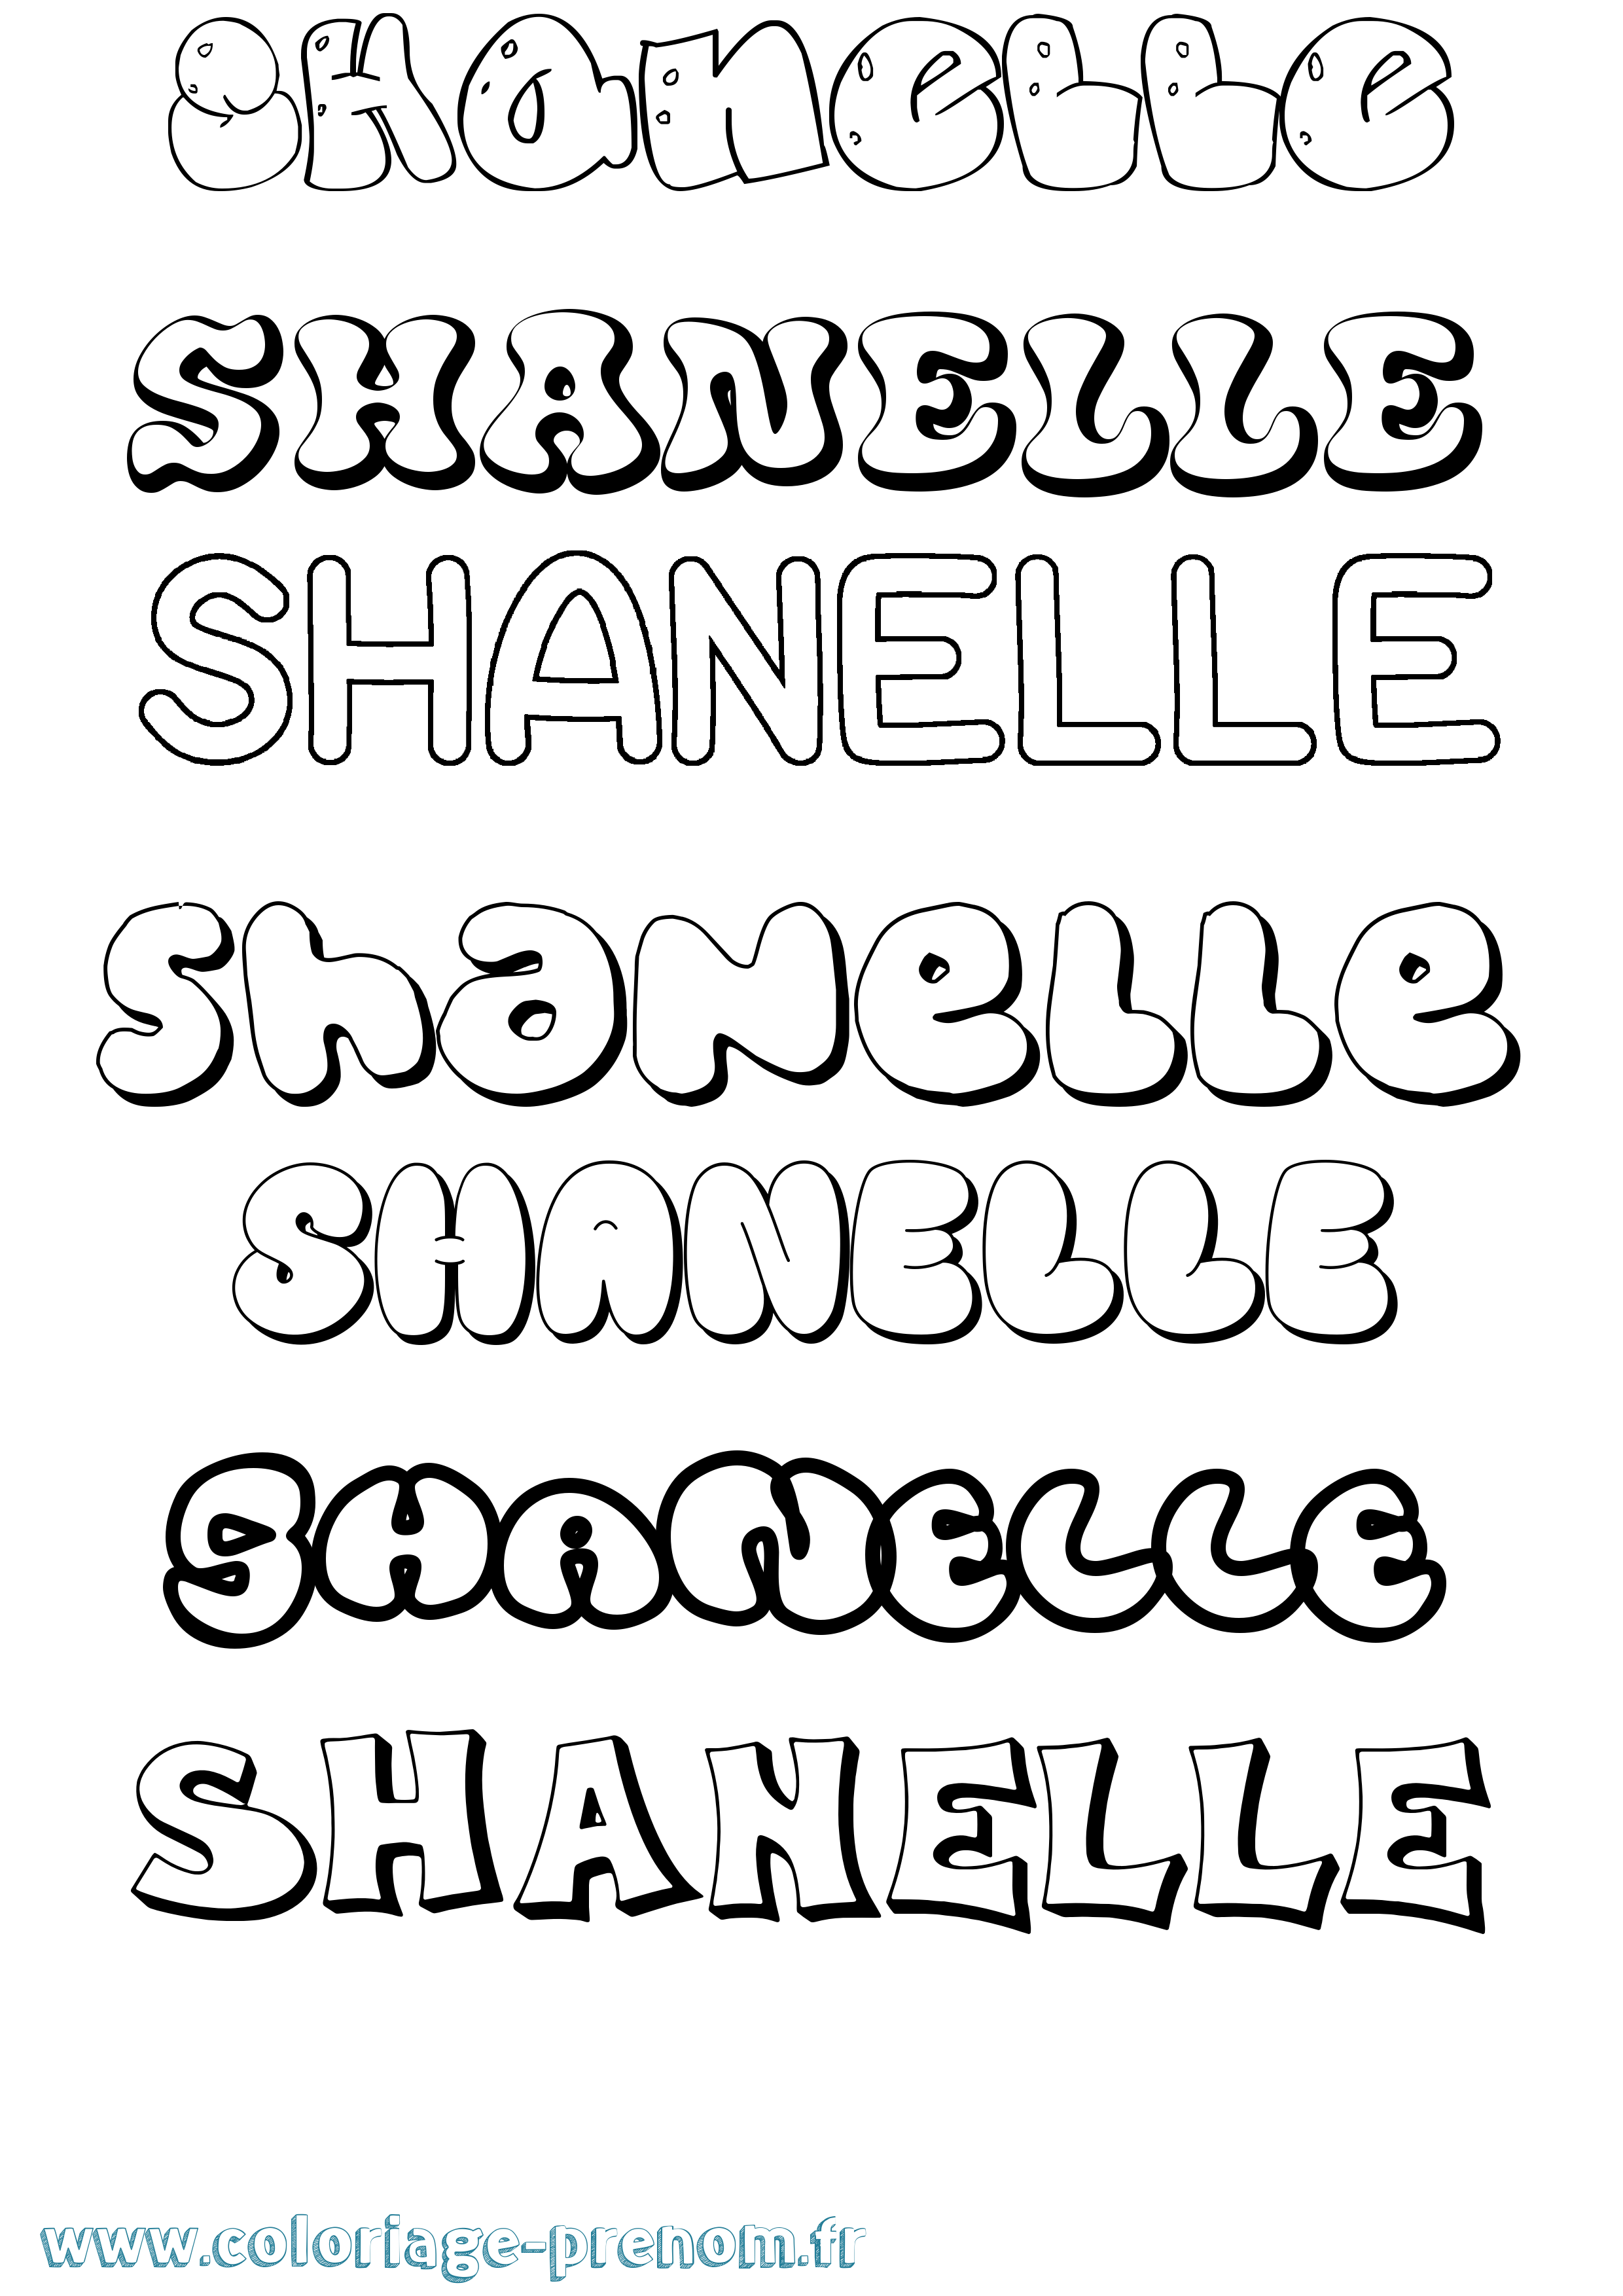 Coloriage prénom Shanelle Bubble